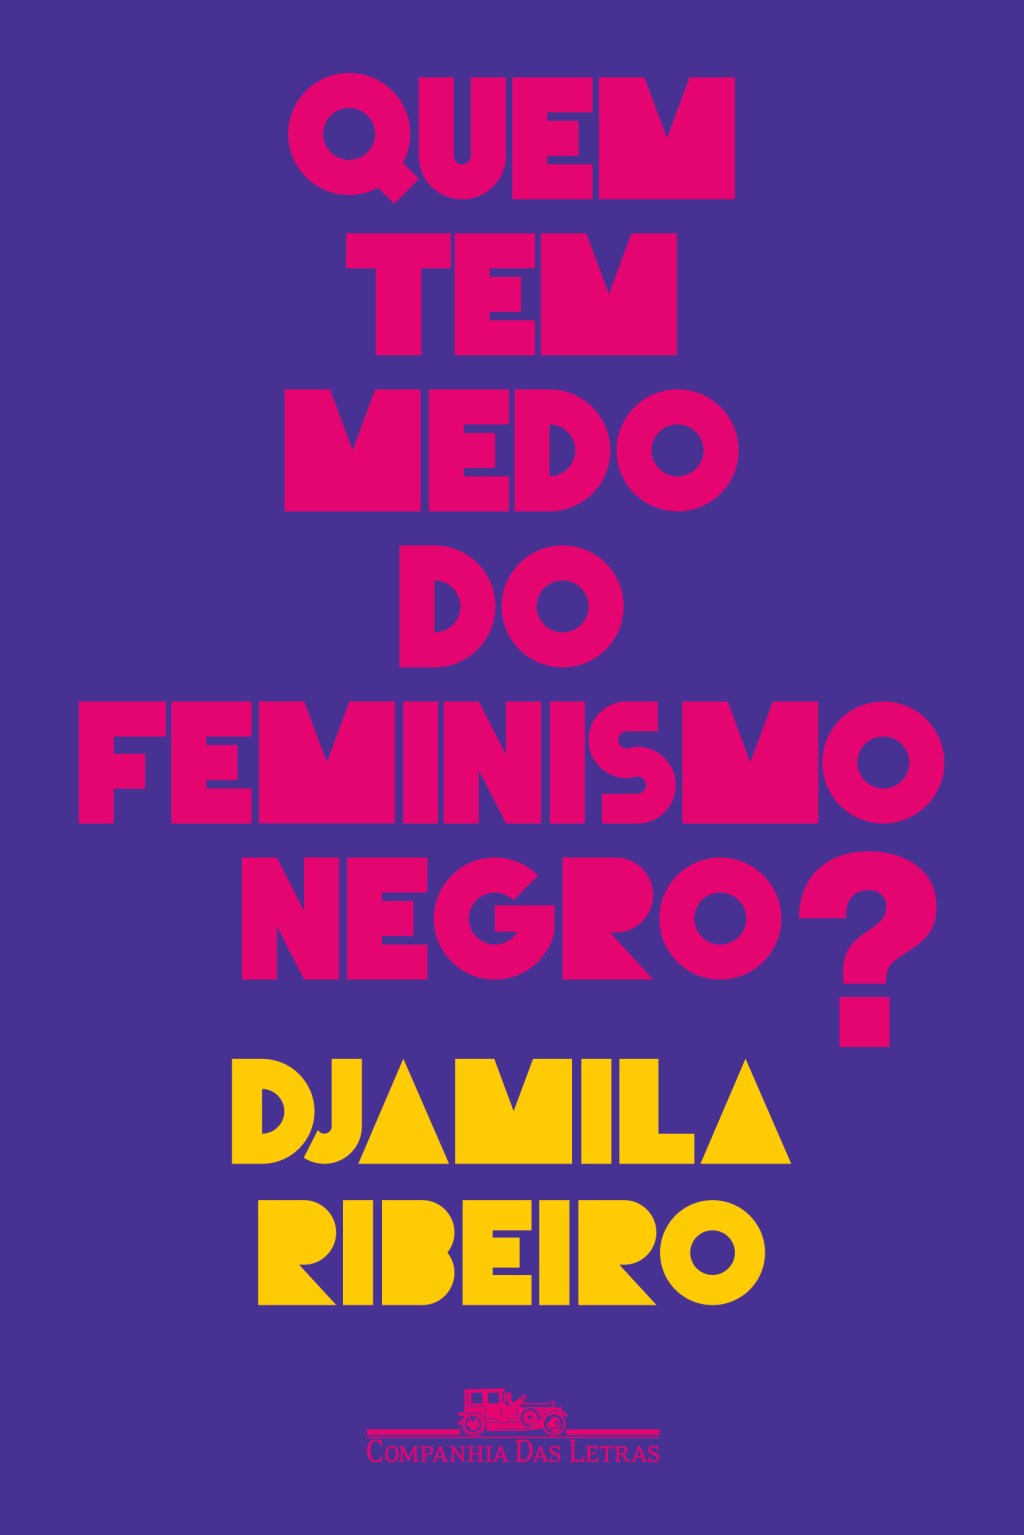 Capa do livro "Quem tem medo do feminismo negro?"